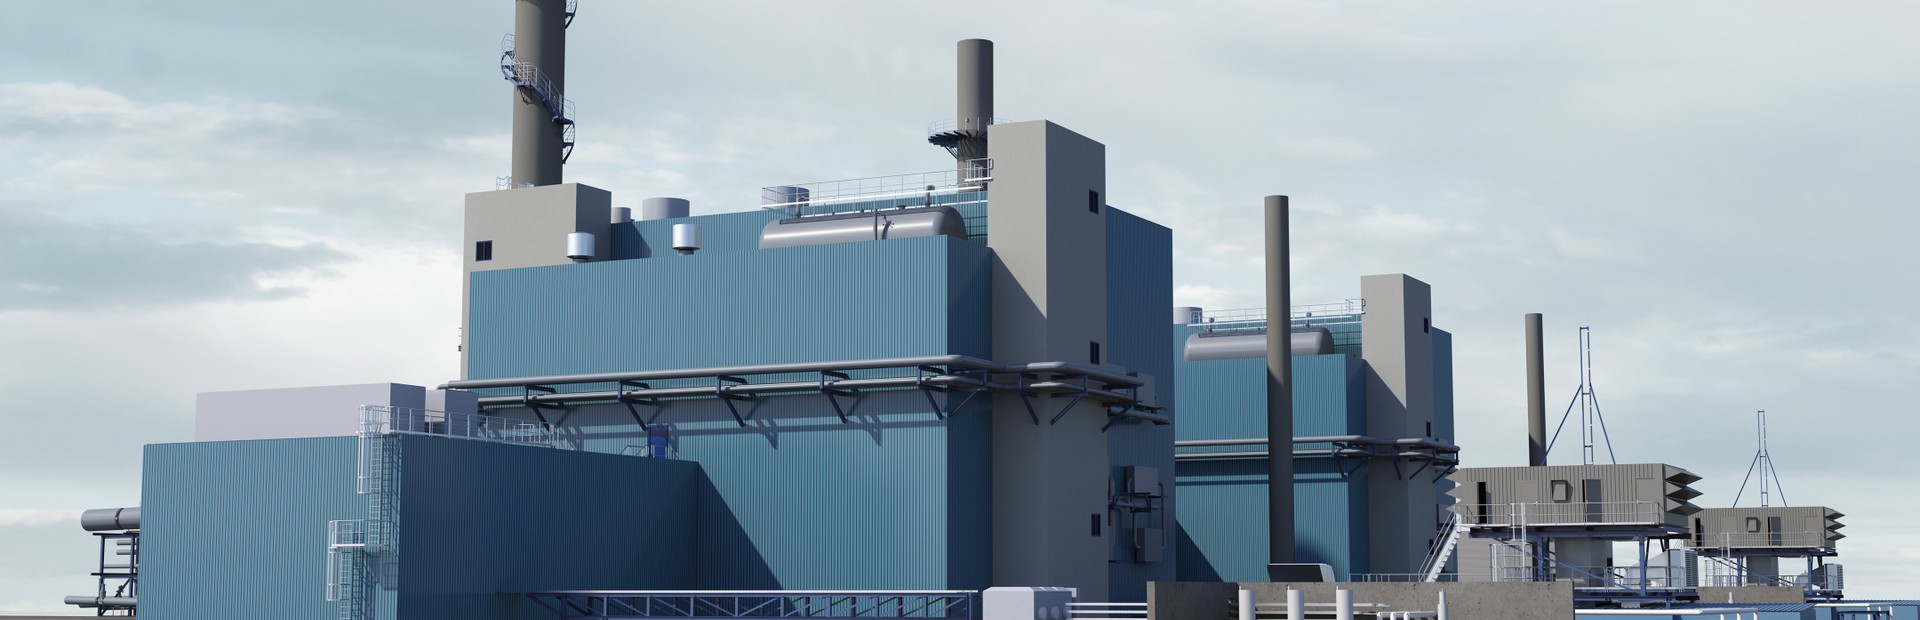 Nová elektrárna s kombinovaným cyklem, která se staví v chemickém parku Marl v Severním Porýní-Vestfálsku, se bude skládat ze dvou 90 MW bloků. Každá jednotka bude schopna vyrábět elektřinu, dodávat procesní páru a dálkové teplo.